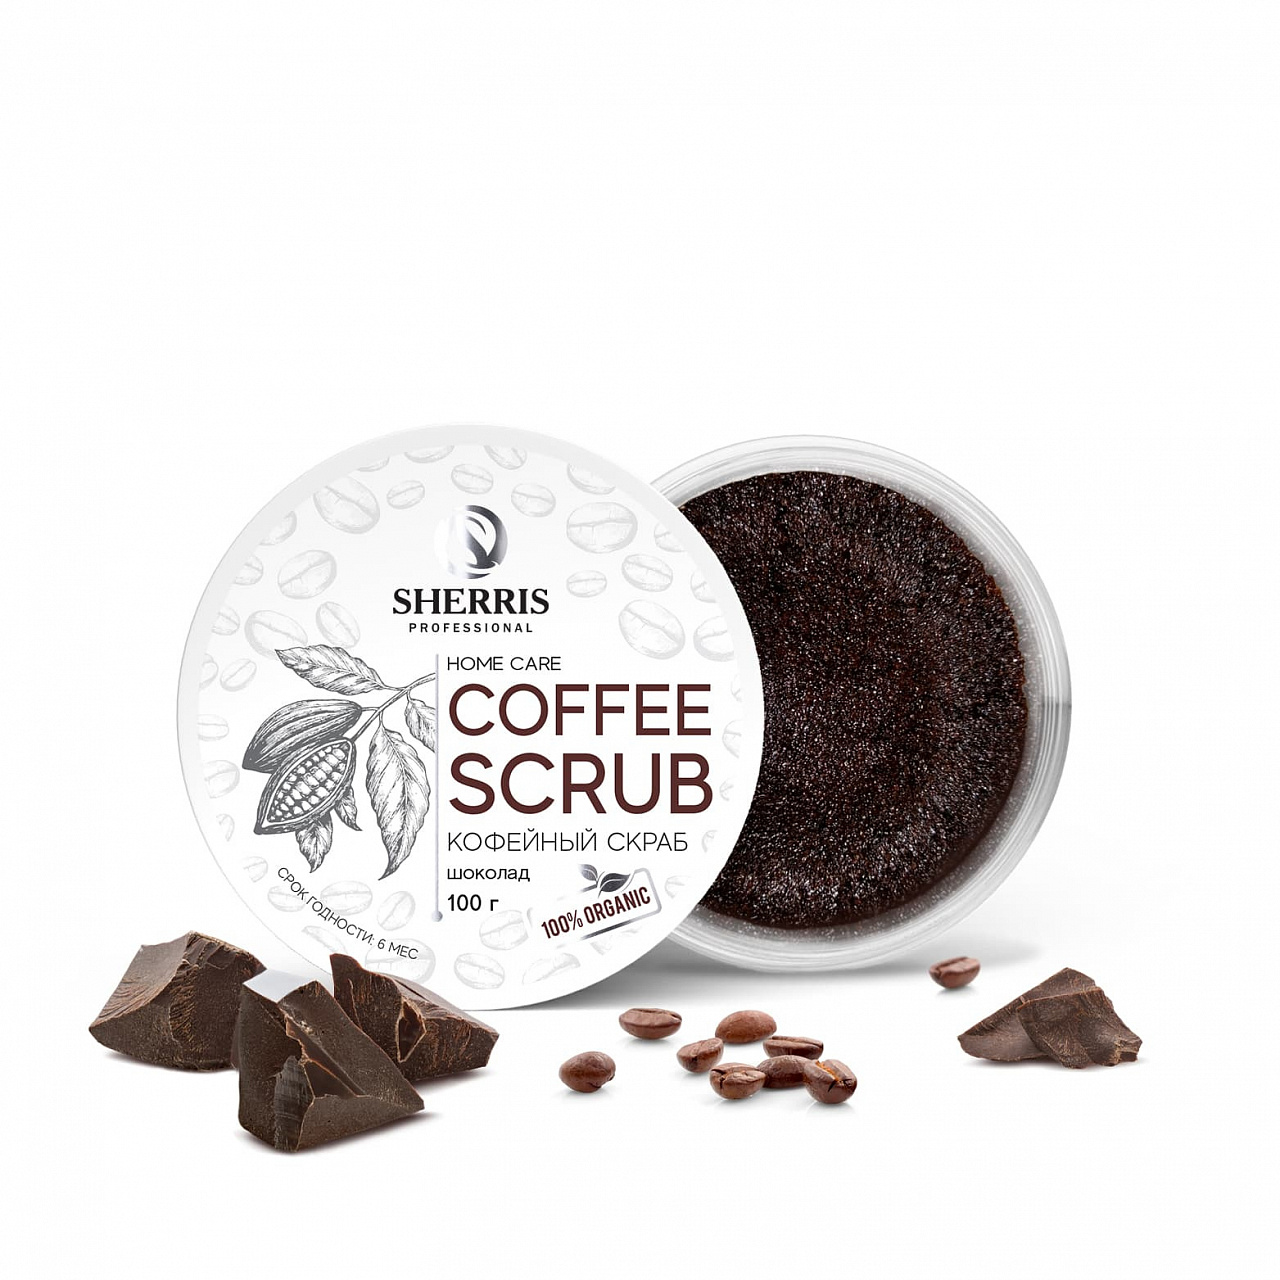 Кофейный скраб для тела SHERRIS шоколад, 100 гр kopusha скраб кубики для тела кофе какао 250